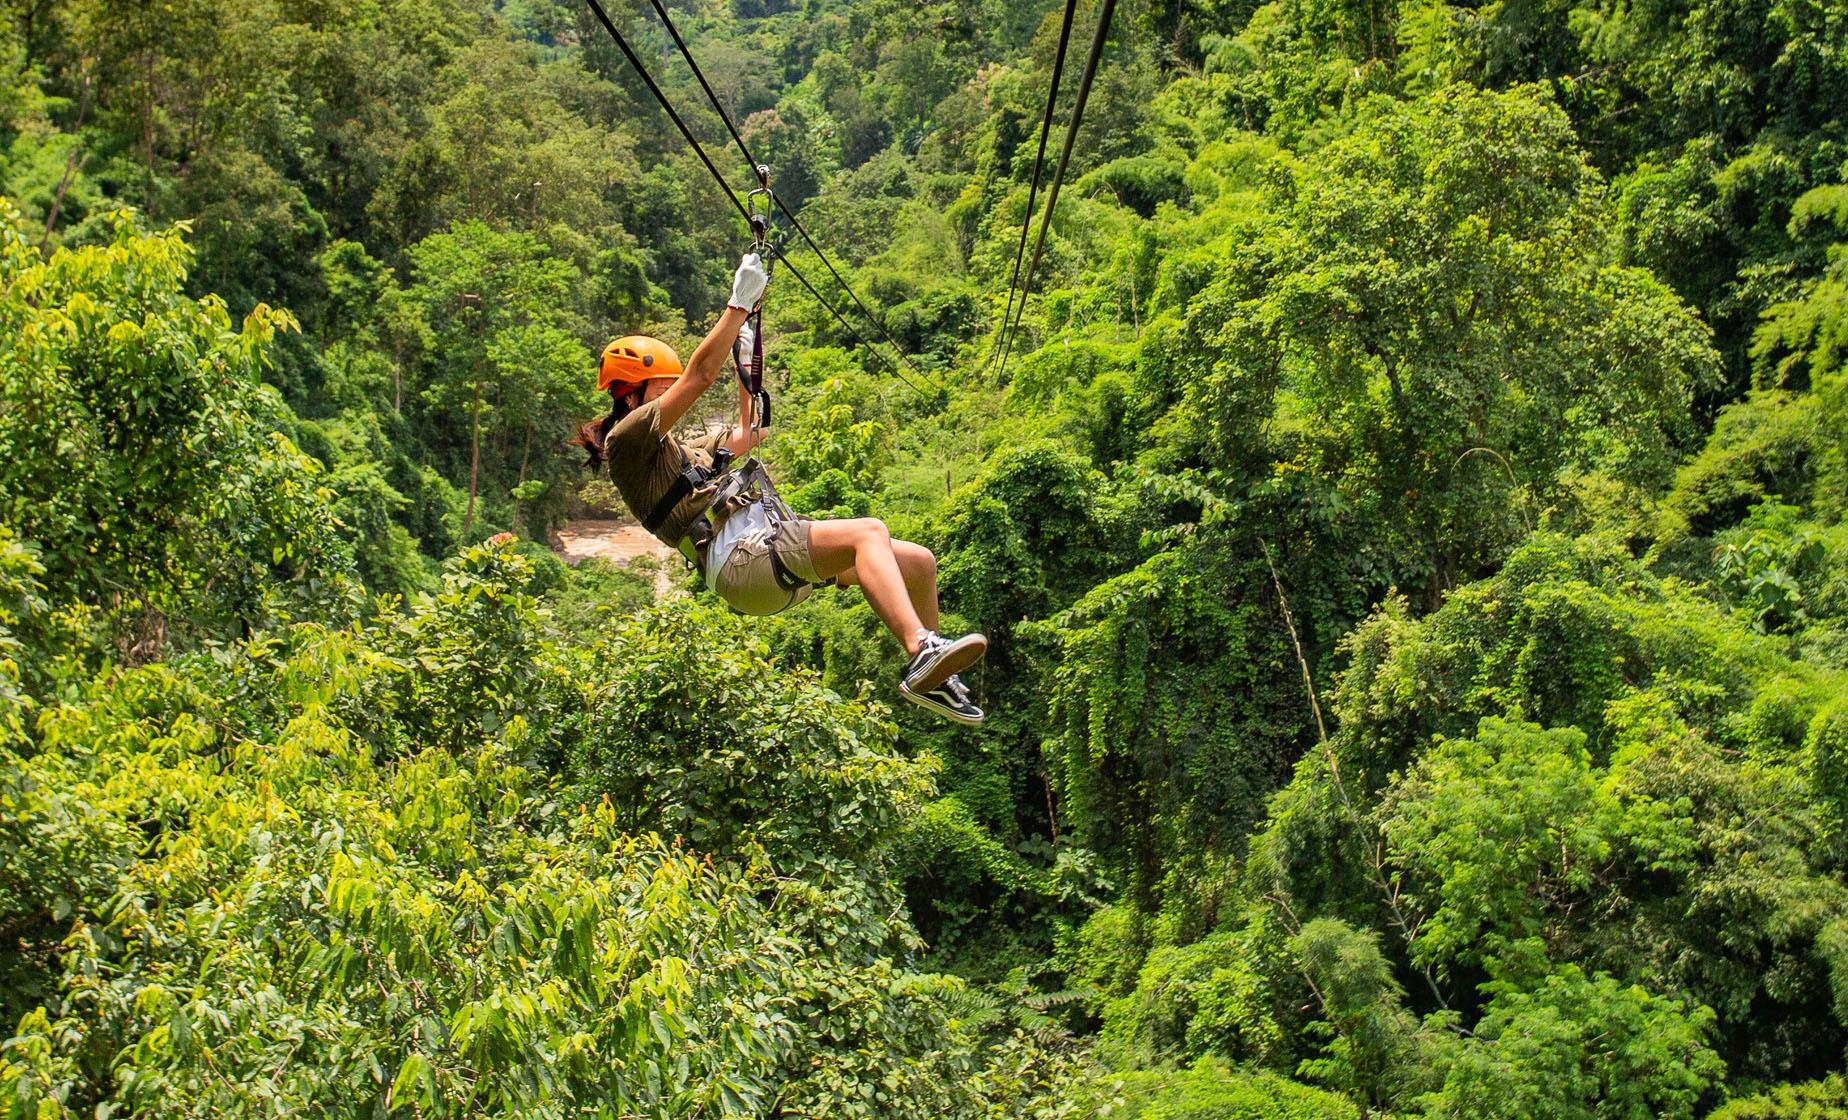 Zipline Adventure Cruise Tour in Roatan Honduras